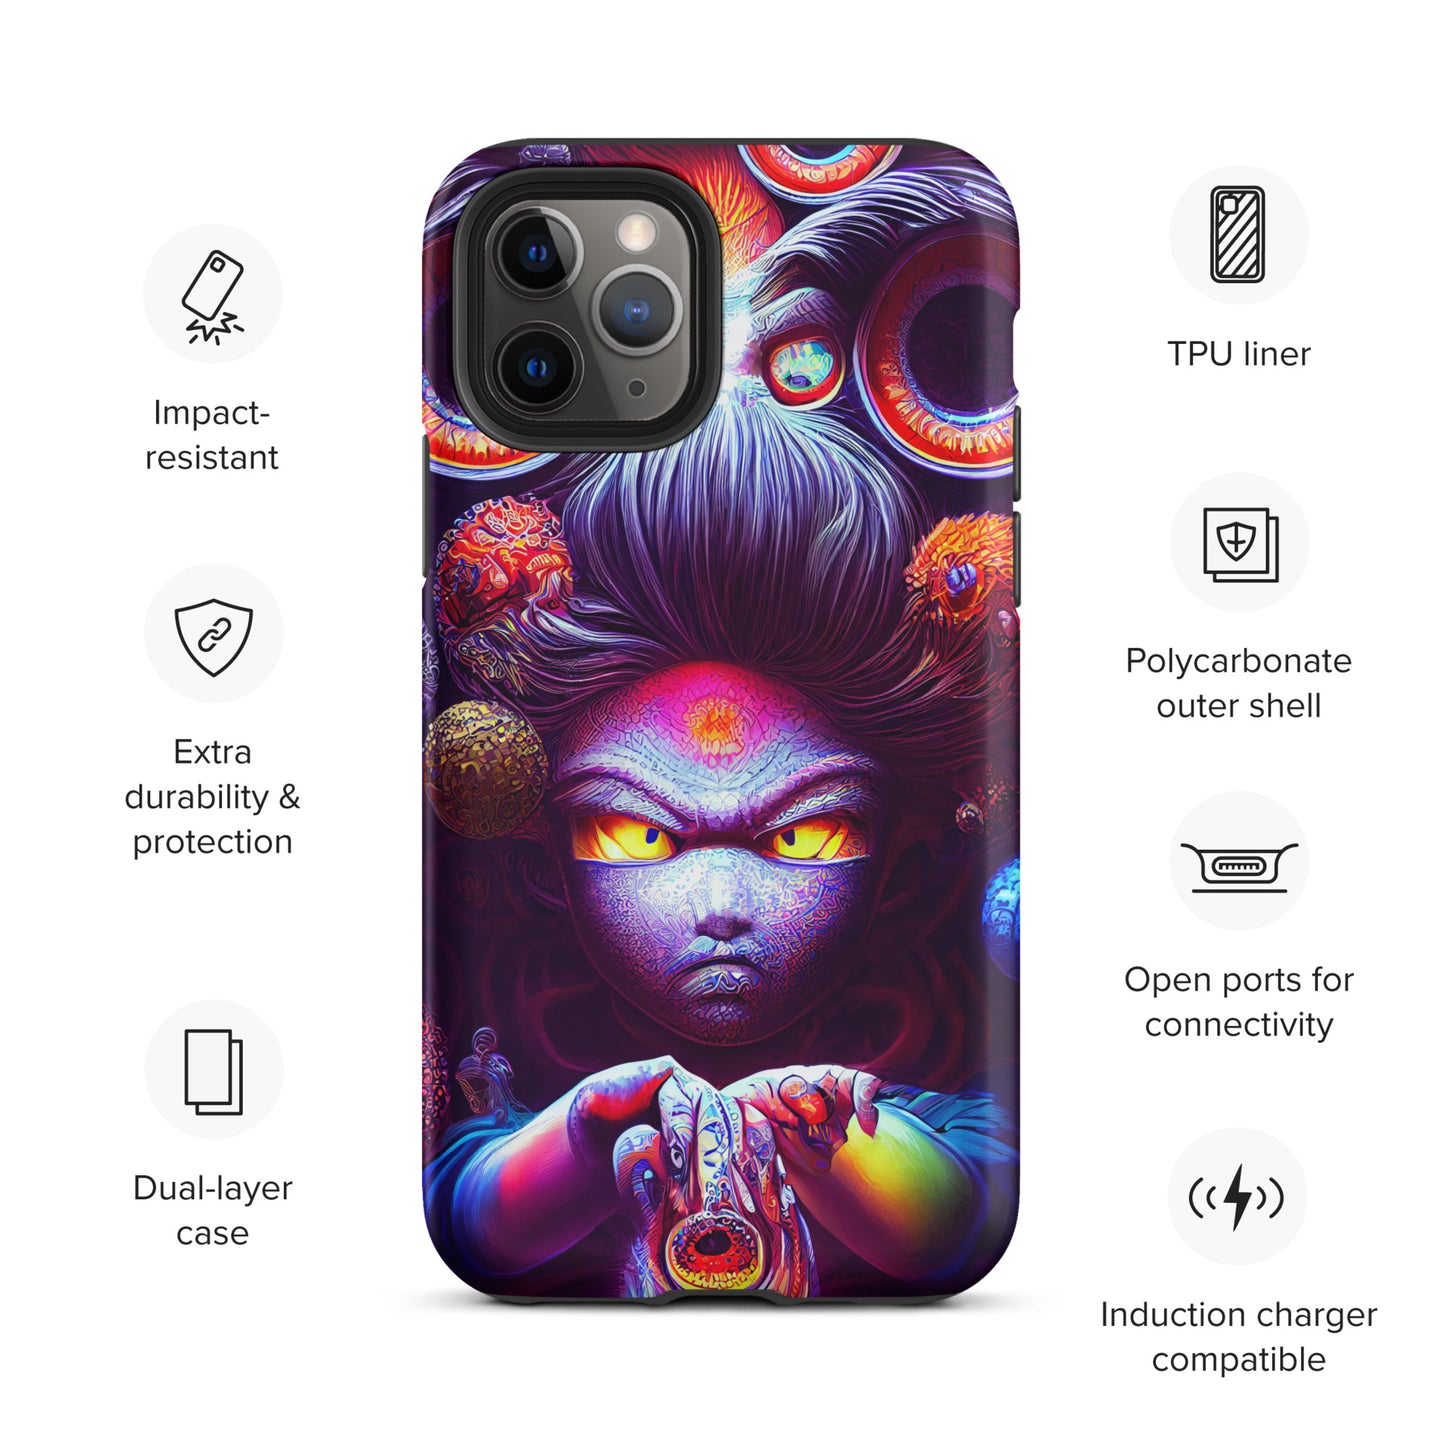 Super Saiyan in Wonderland 1.0 Tough iPhone case